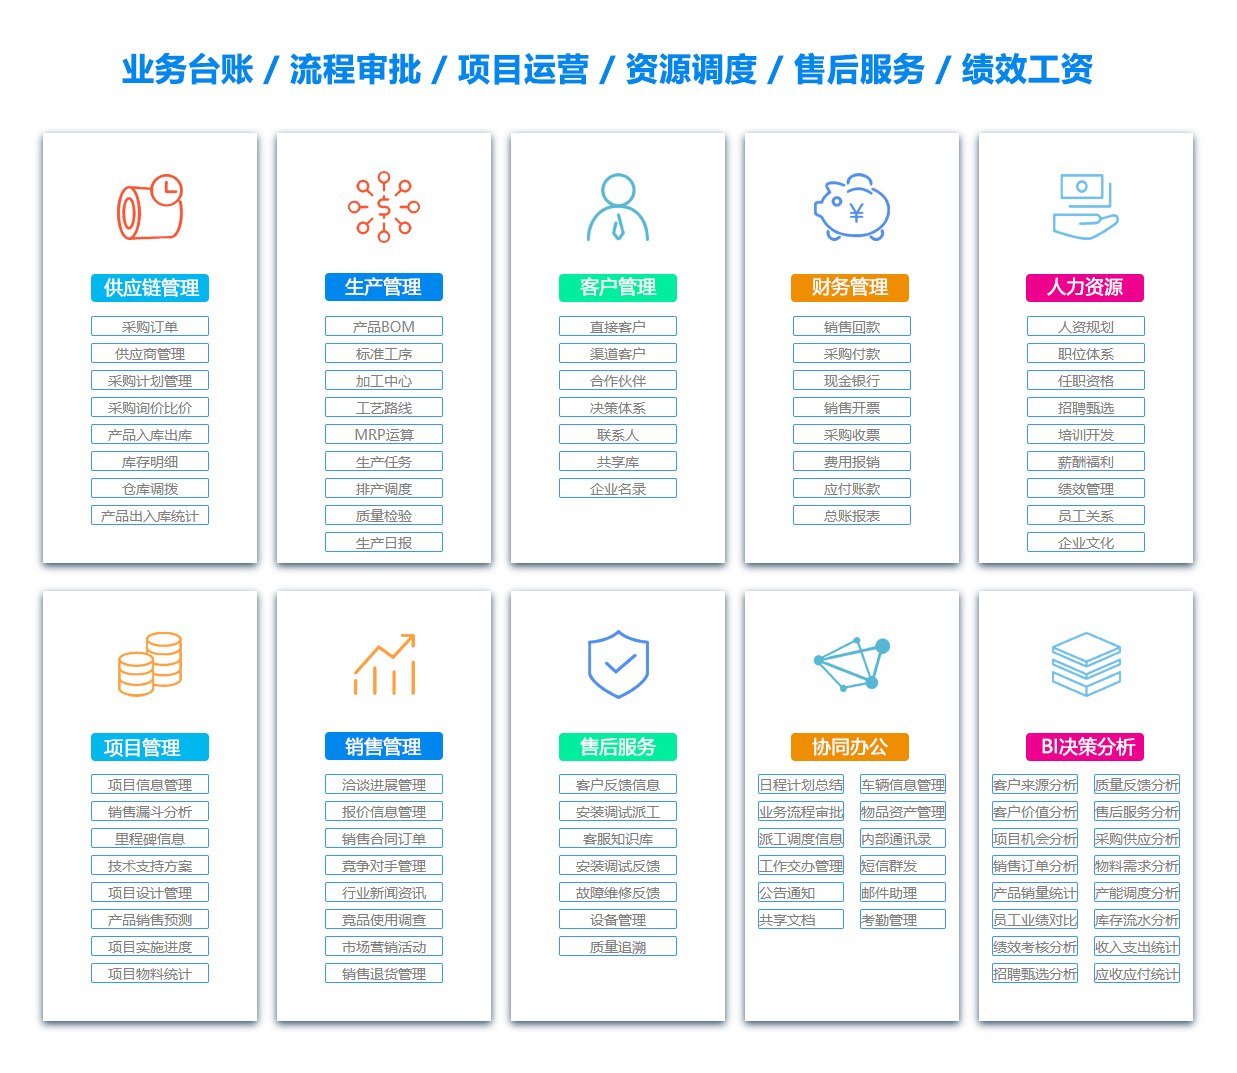 杭州SCM:供应链管理系统